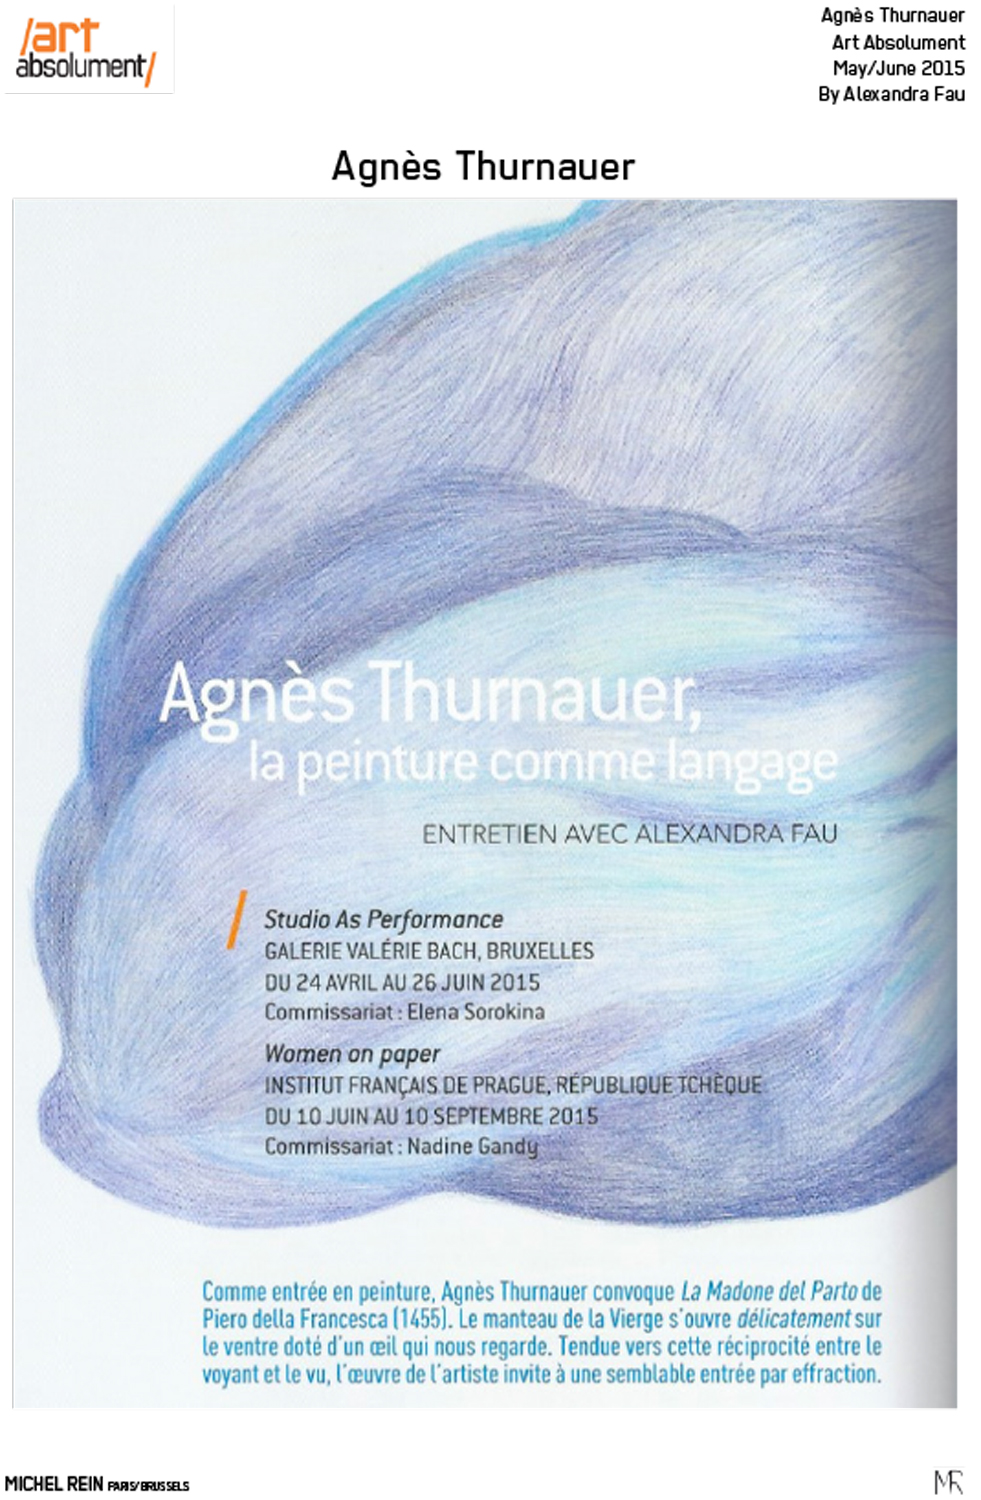 Agns Thurnauer, la peinture comme langage - Art Absolument